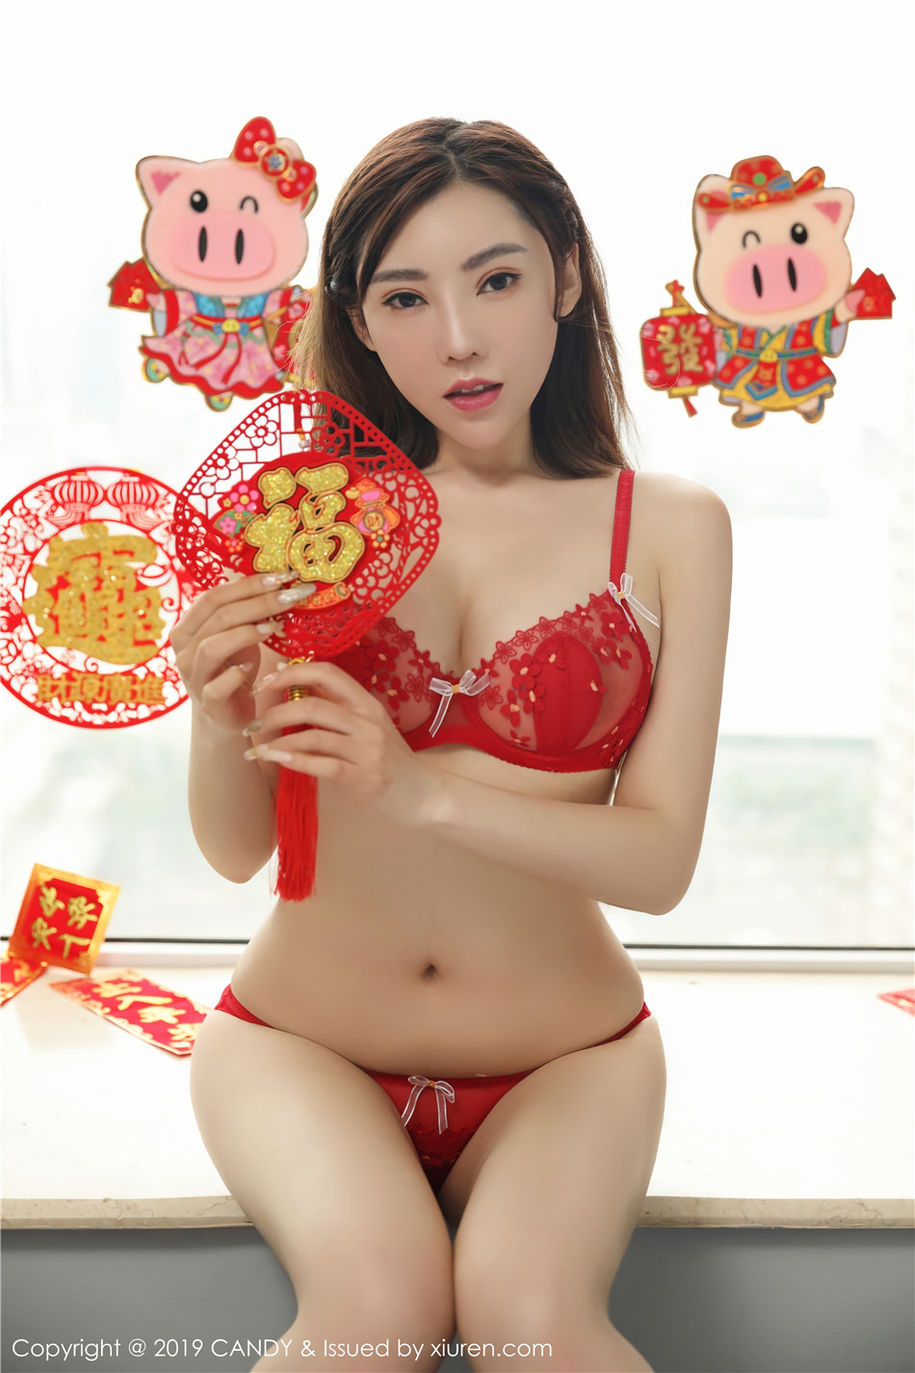 中国人体艺术美女萌汉药baby很酷超性感红色内衣写真(第7页)